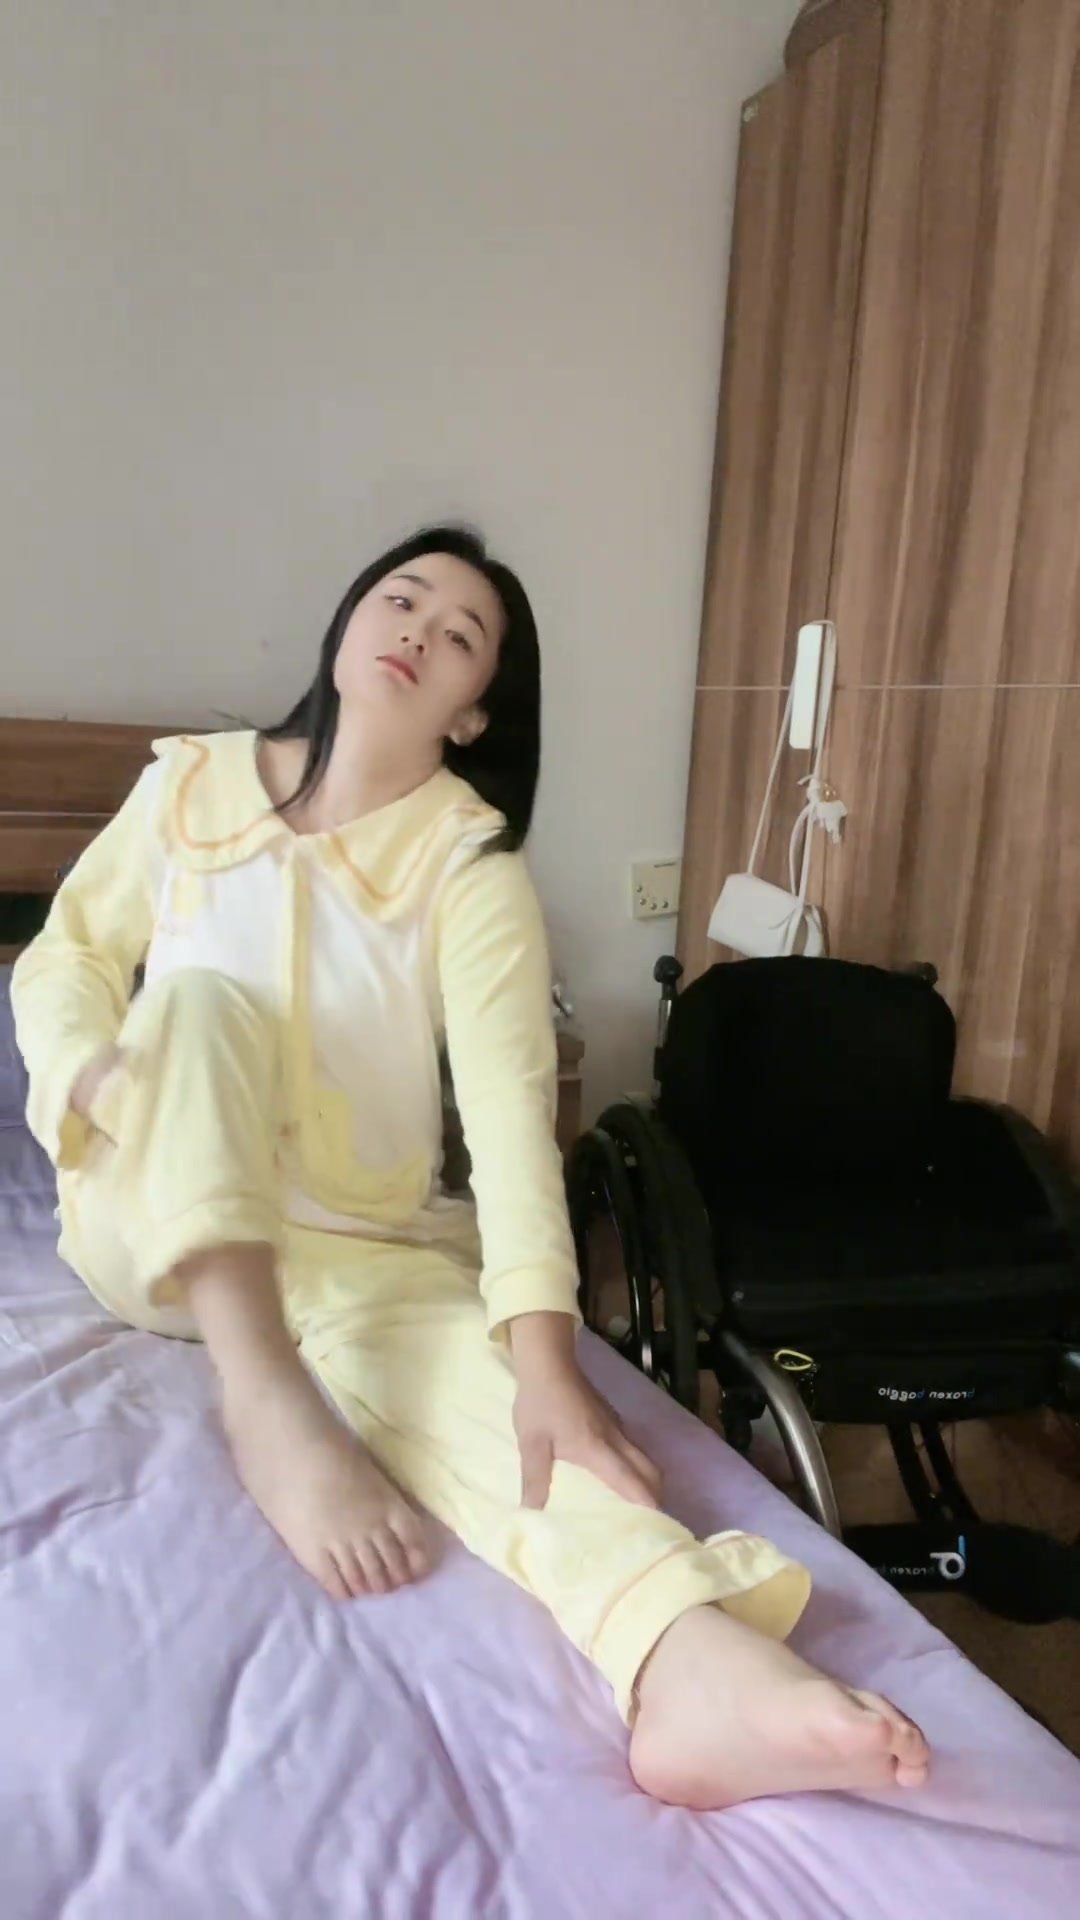 Paraplegic on bed